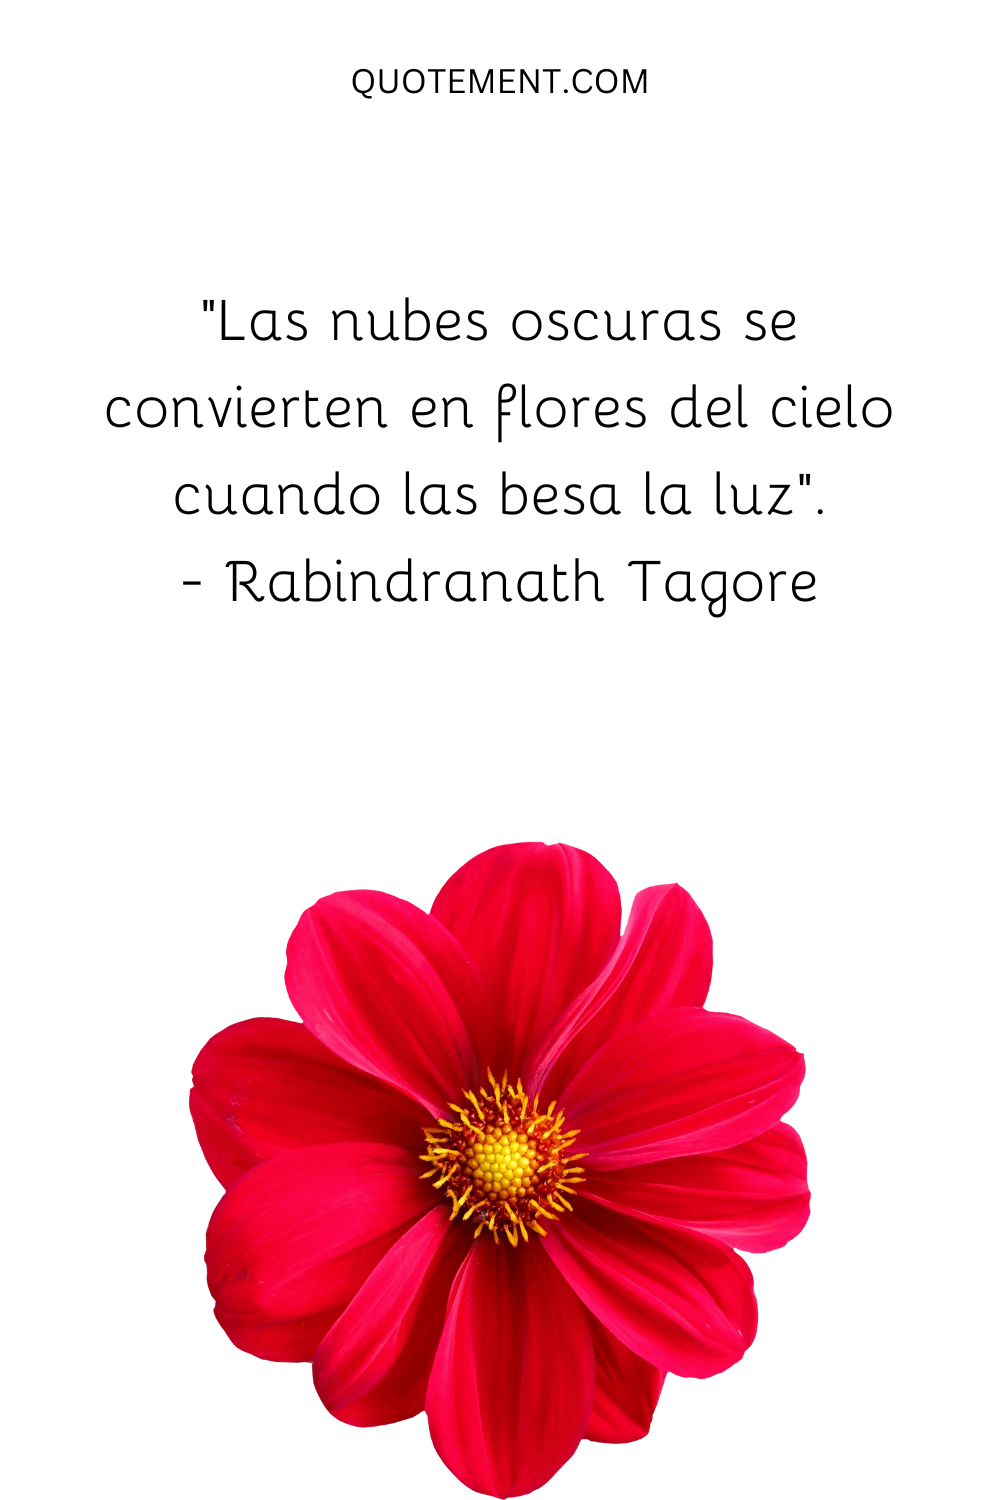 "Las nubes oscuras se convierten en flores del cielo cuando las besa la luz". - Rabindranath Tagore